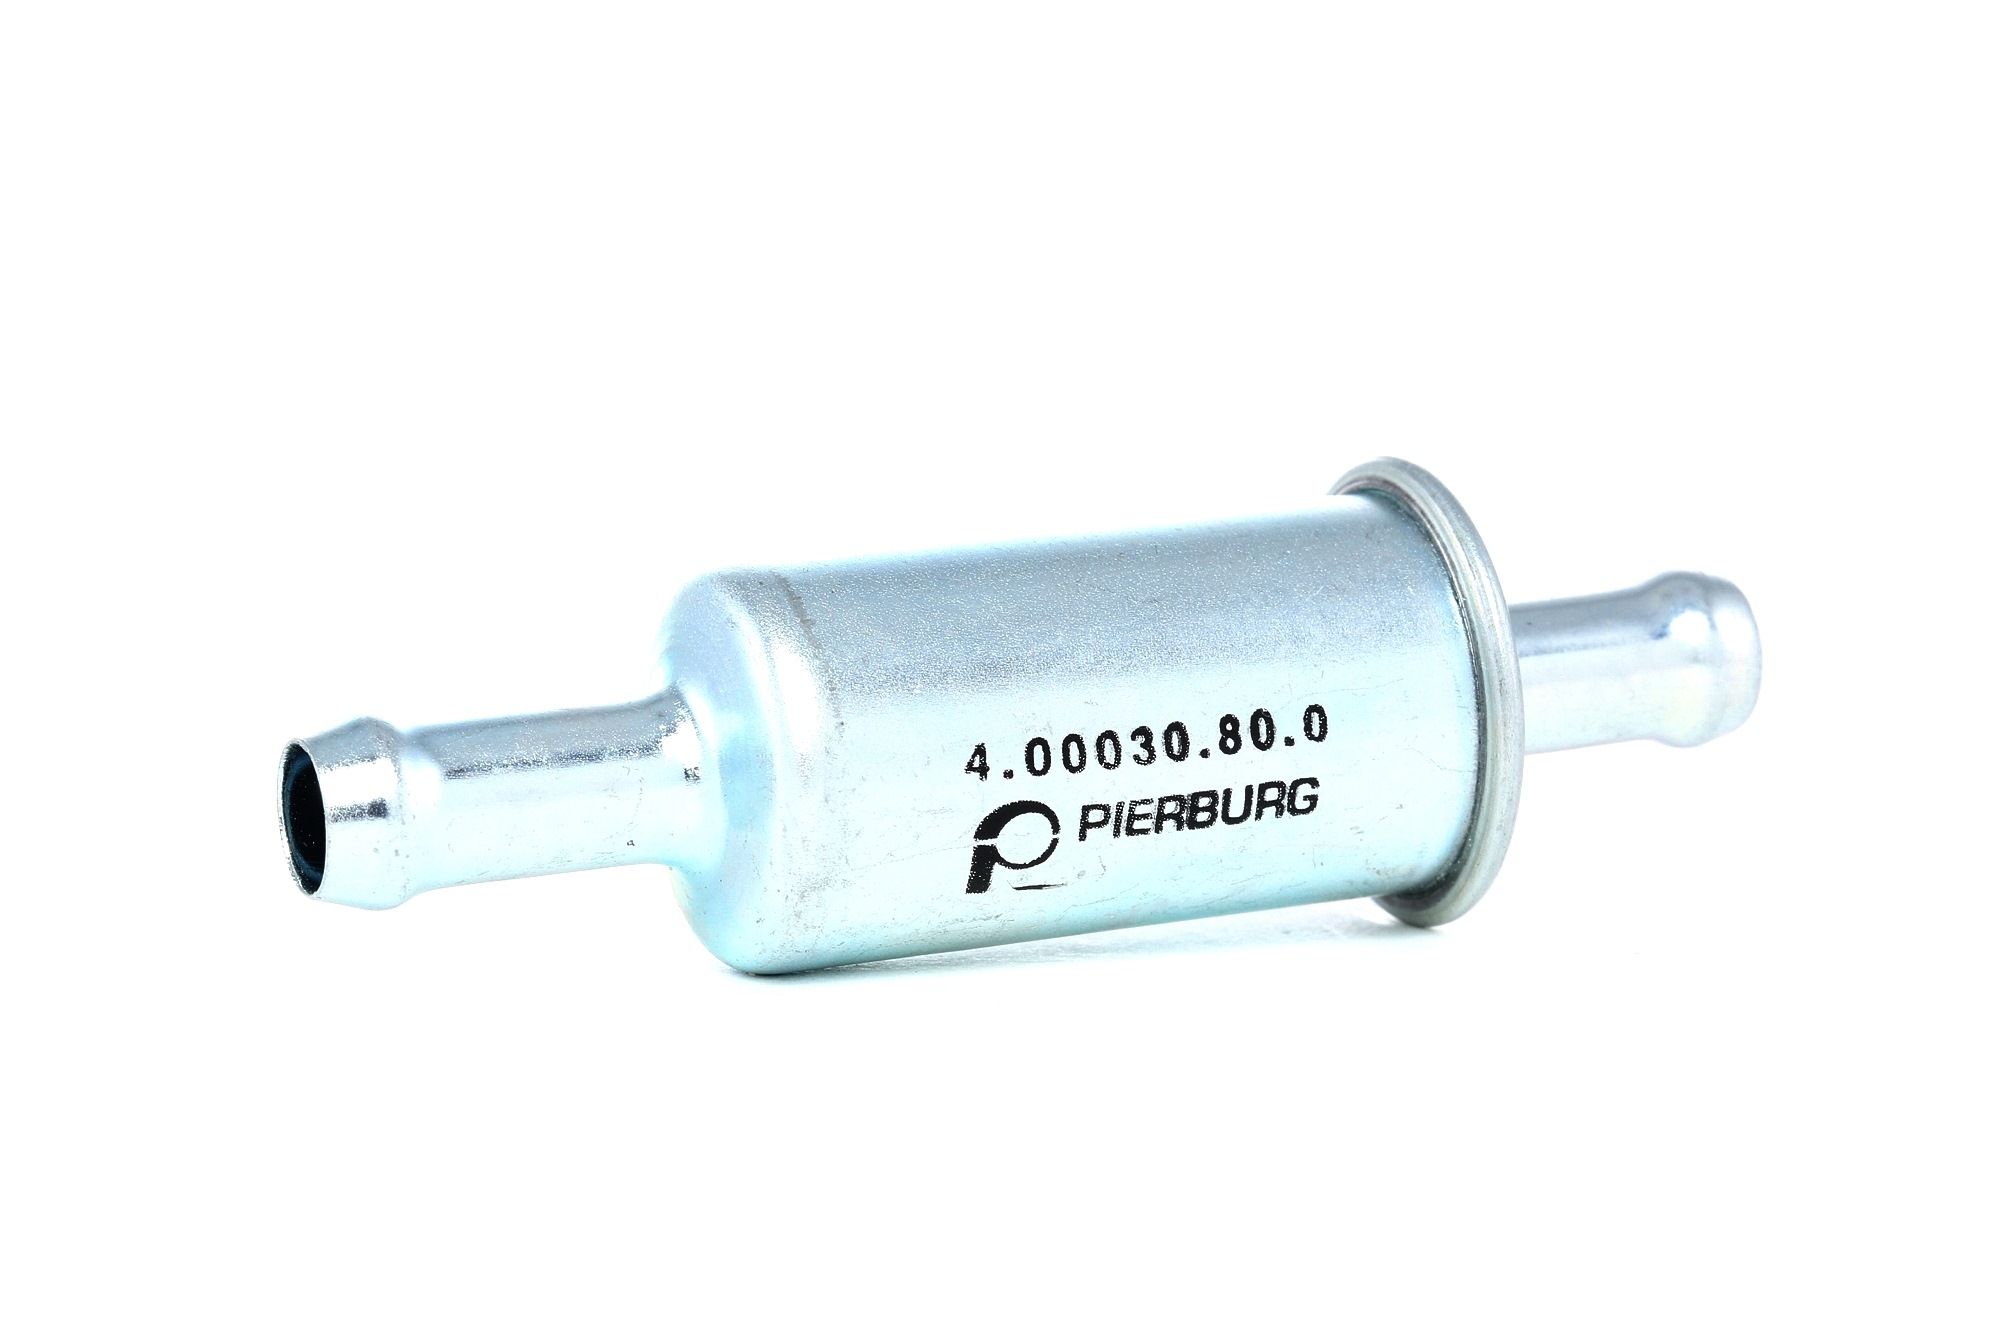 PIERBURG 4.00030.80.0 Benzinfilter Leitungsfilter BMW in Original Qualität